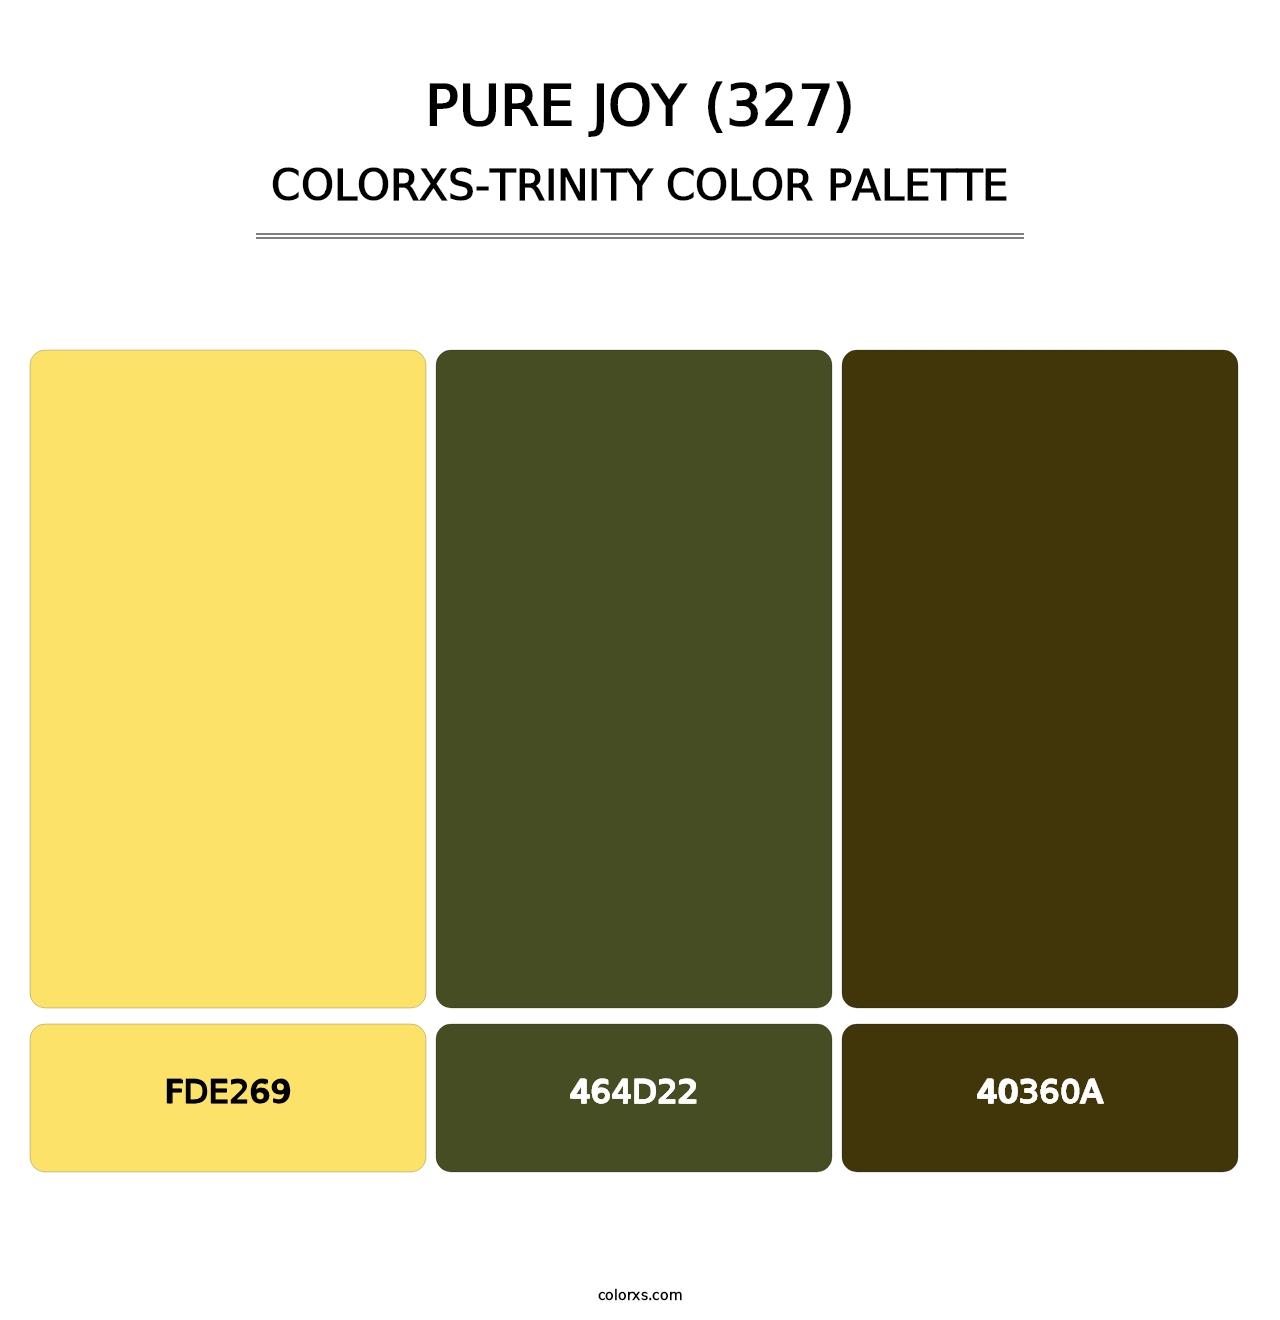 Pure Joy (327) - Colorxs Trinity Palette